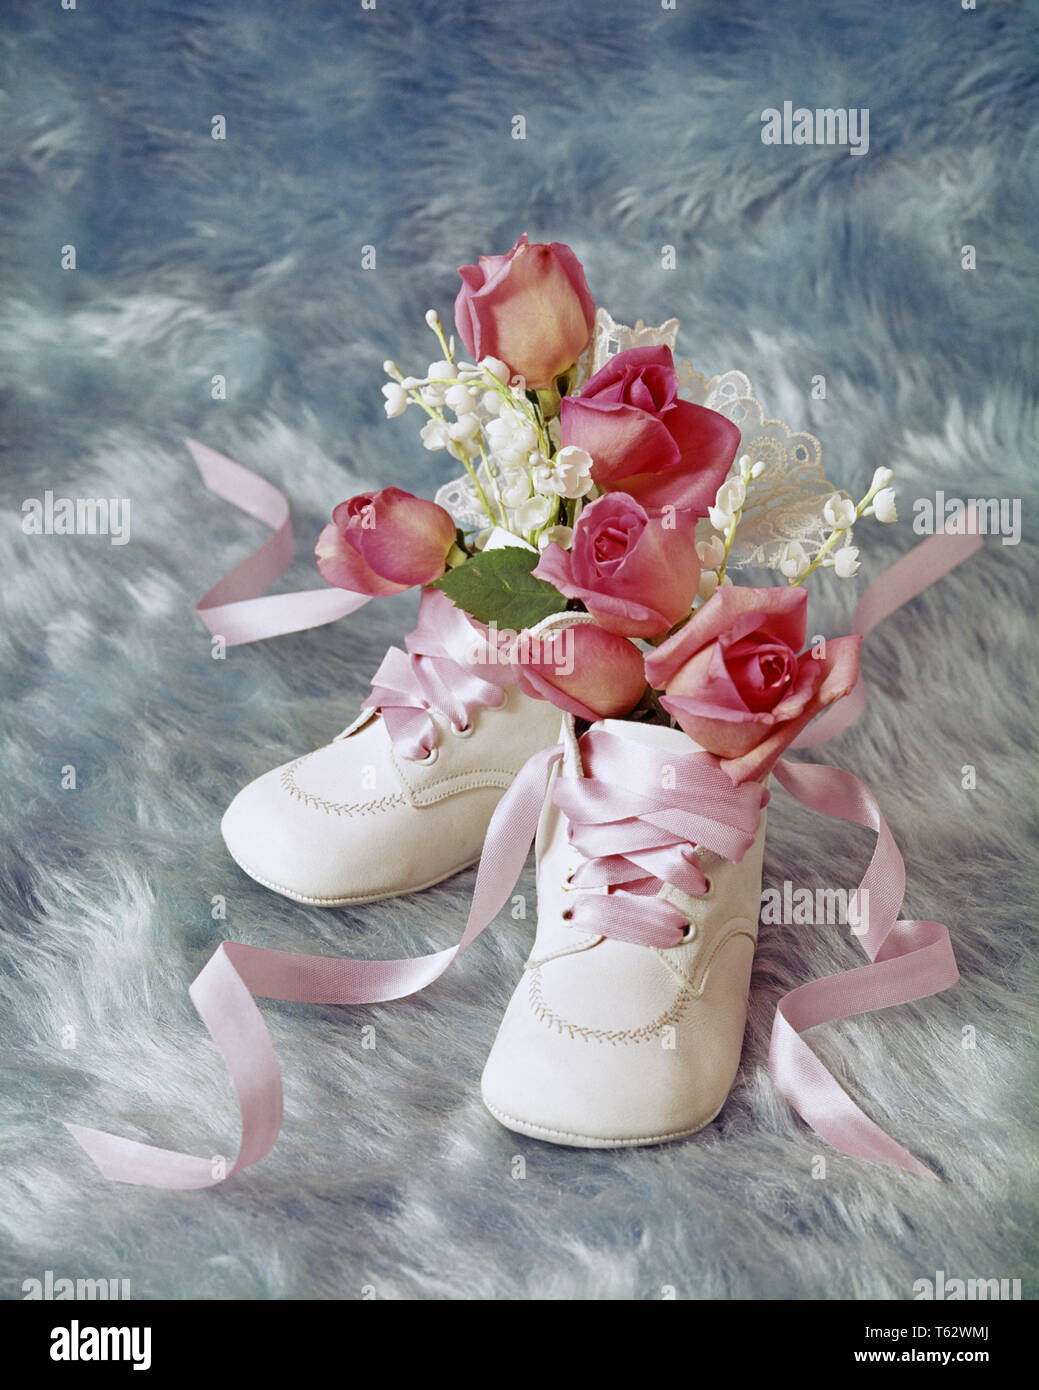 1970s 1980s Geburtstag noch LEBEN DER WEISSEN BABY SCHUHE HOLDING MINIATUR ROSA ROSEN UND BABY'S ATEM Blumen auf blau hintergrund-kf 8897 PHT 001 HARS ALTMODISCH Stockfoto